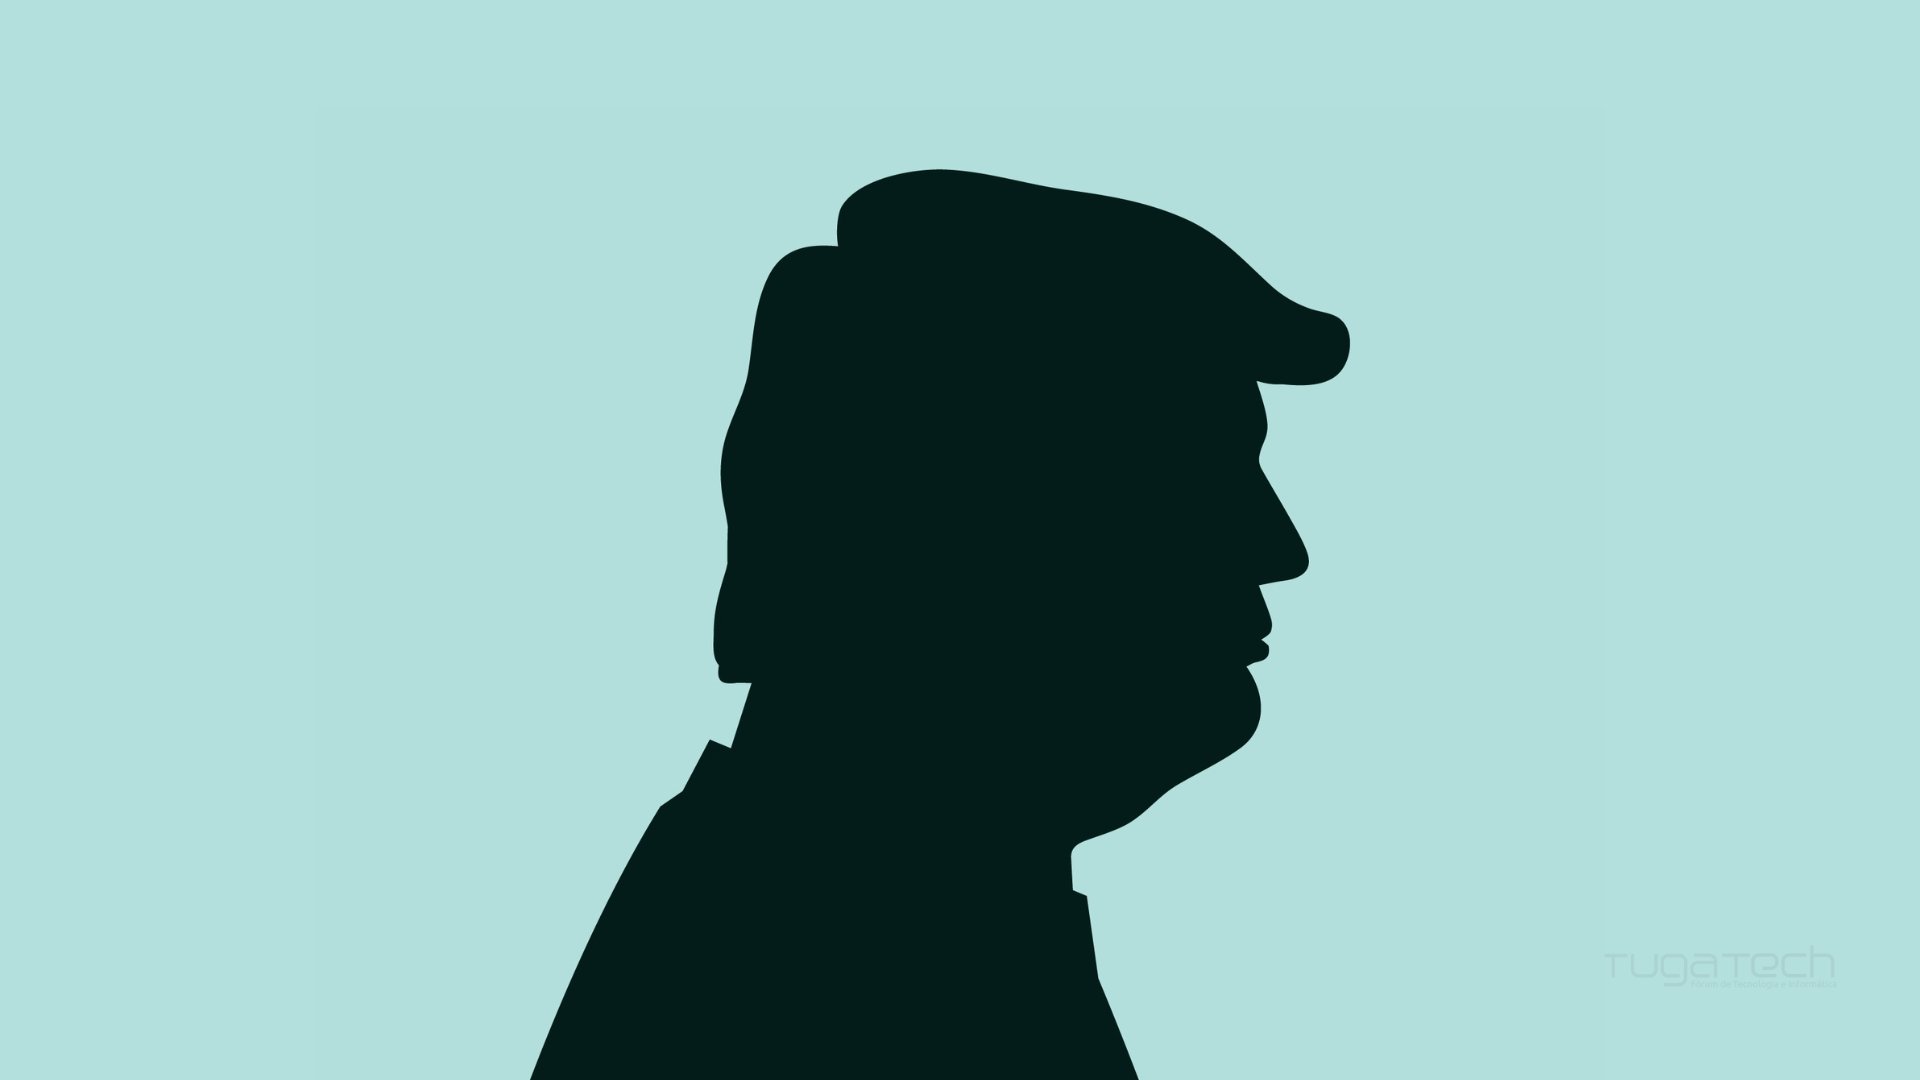 Donald Trump sombra